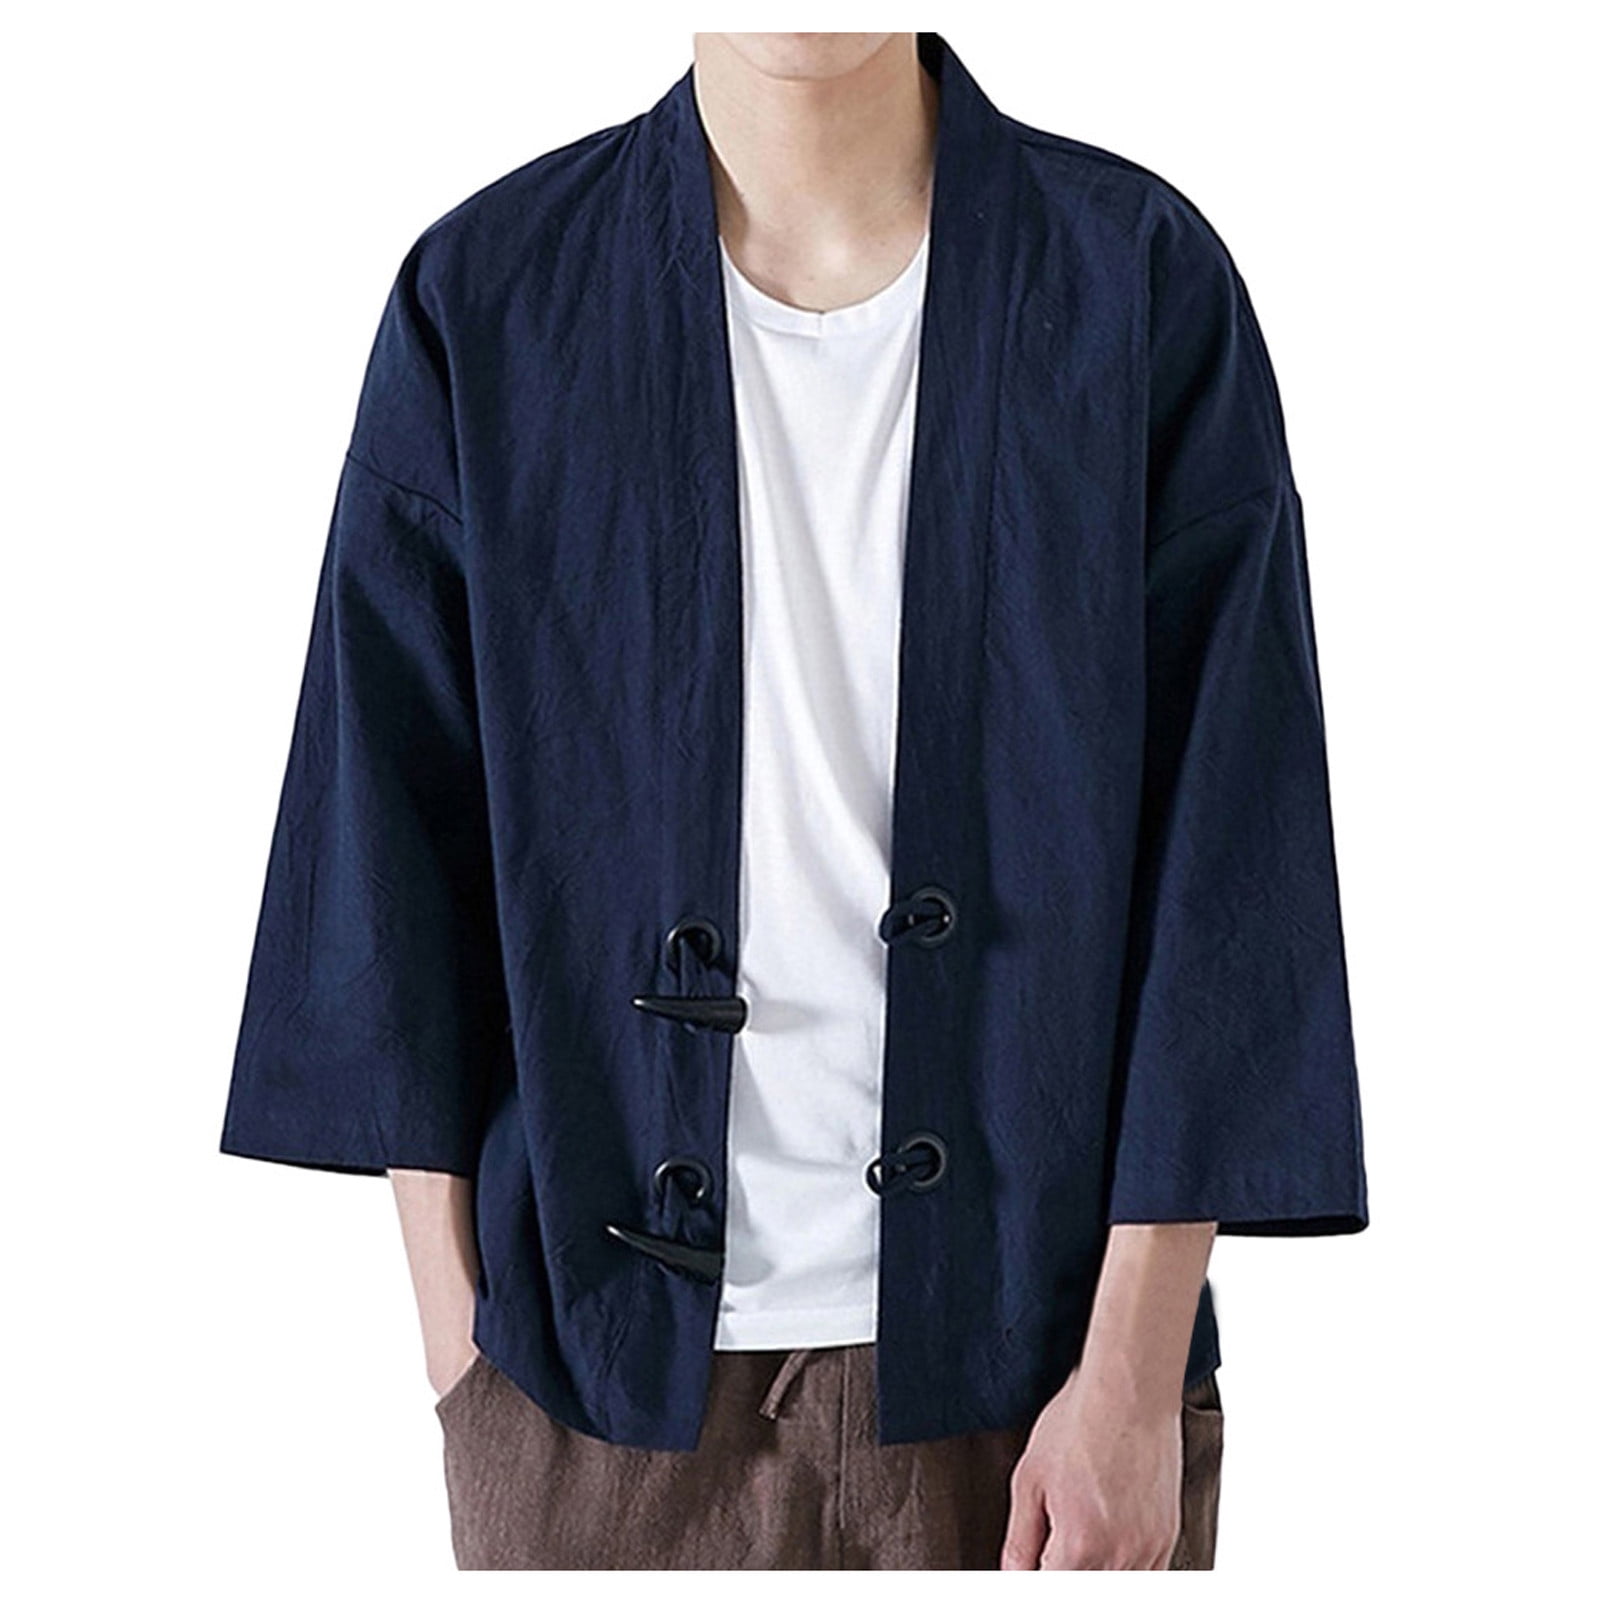 WGOUP Fashion Men Japanese Yukata Casual Coat Kimono Outwear Cotton Vintage  Loose Top,Navy